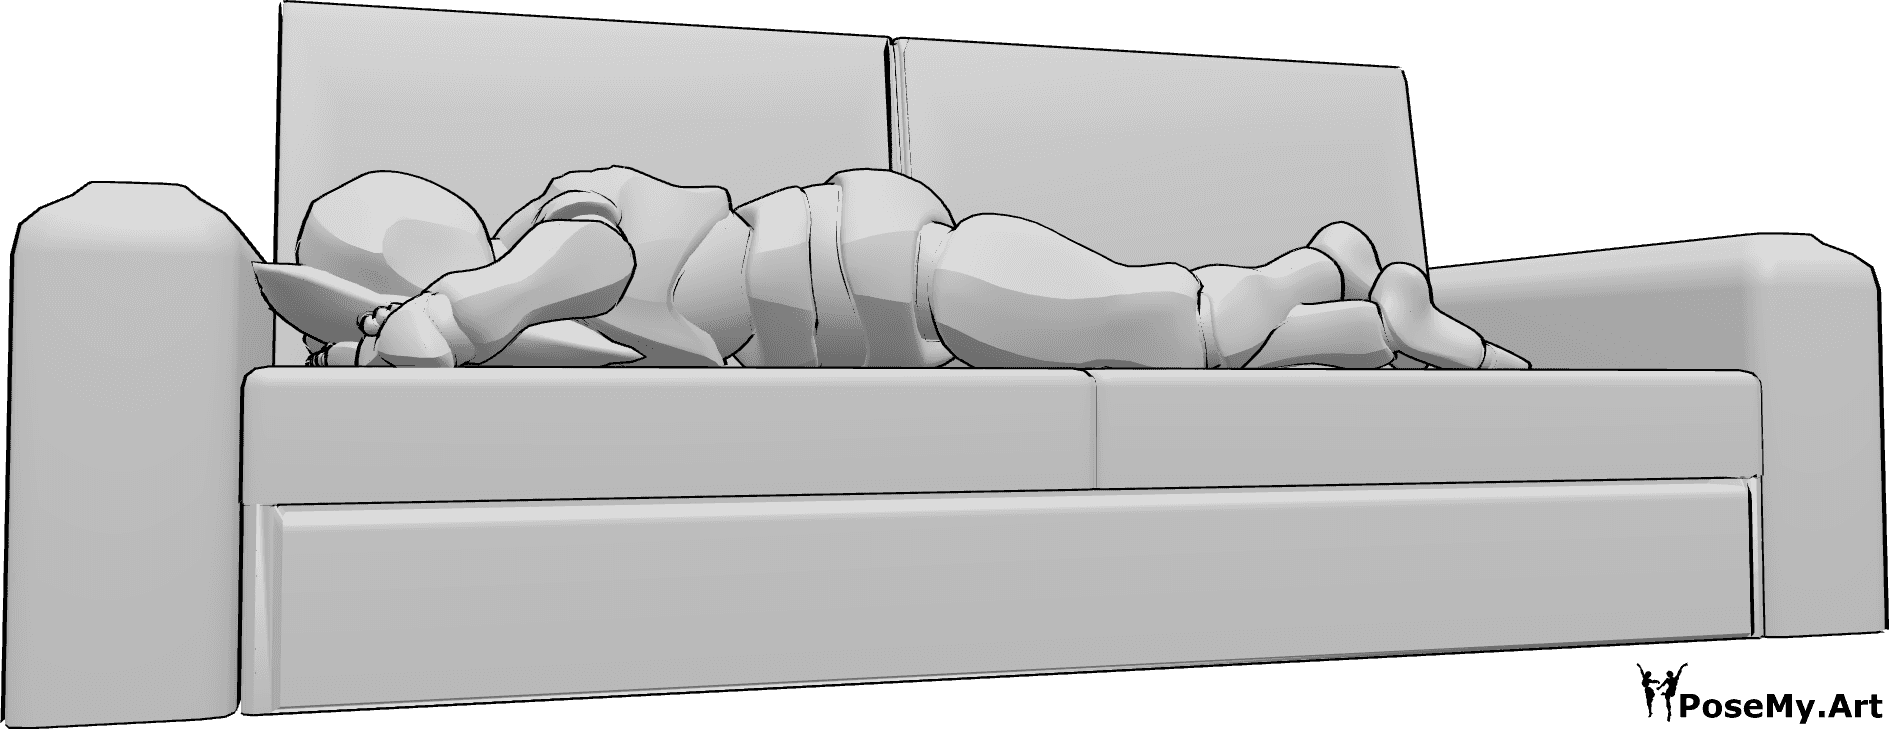 Referência de poses- Homem em pose deitado no sofá - O homem está deitado de barriga para baixo no sofá, com a cabeça apoiada numa almofada